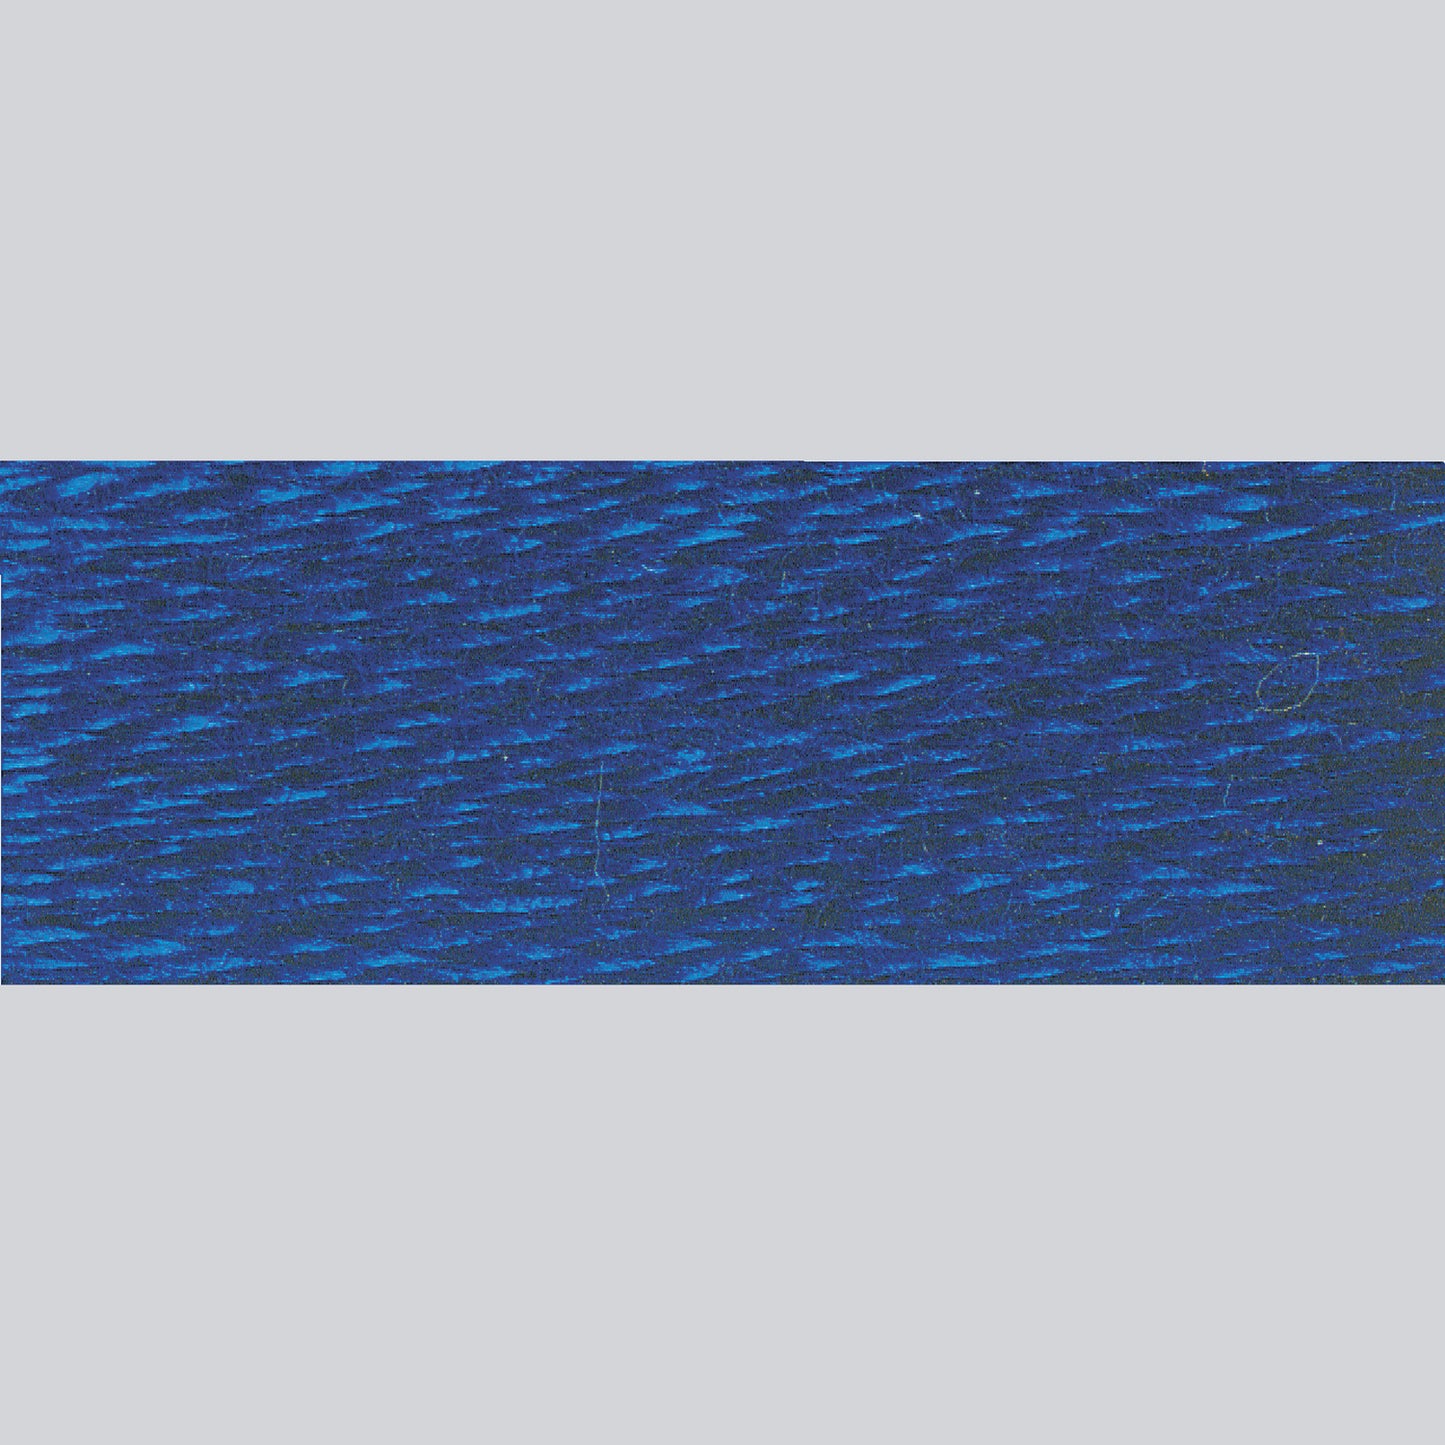 DMC Embroidery Floss - 820 Very Dark Royal Blue Alternative View #1